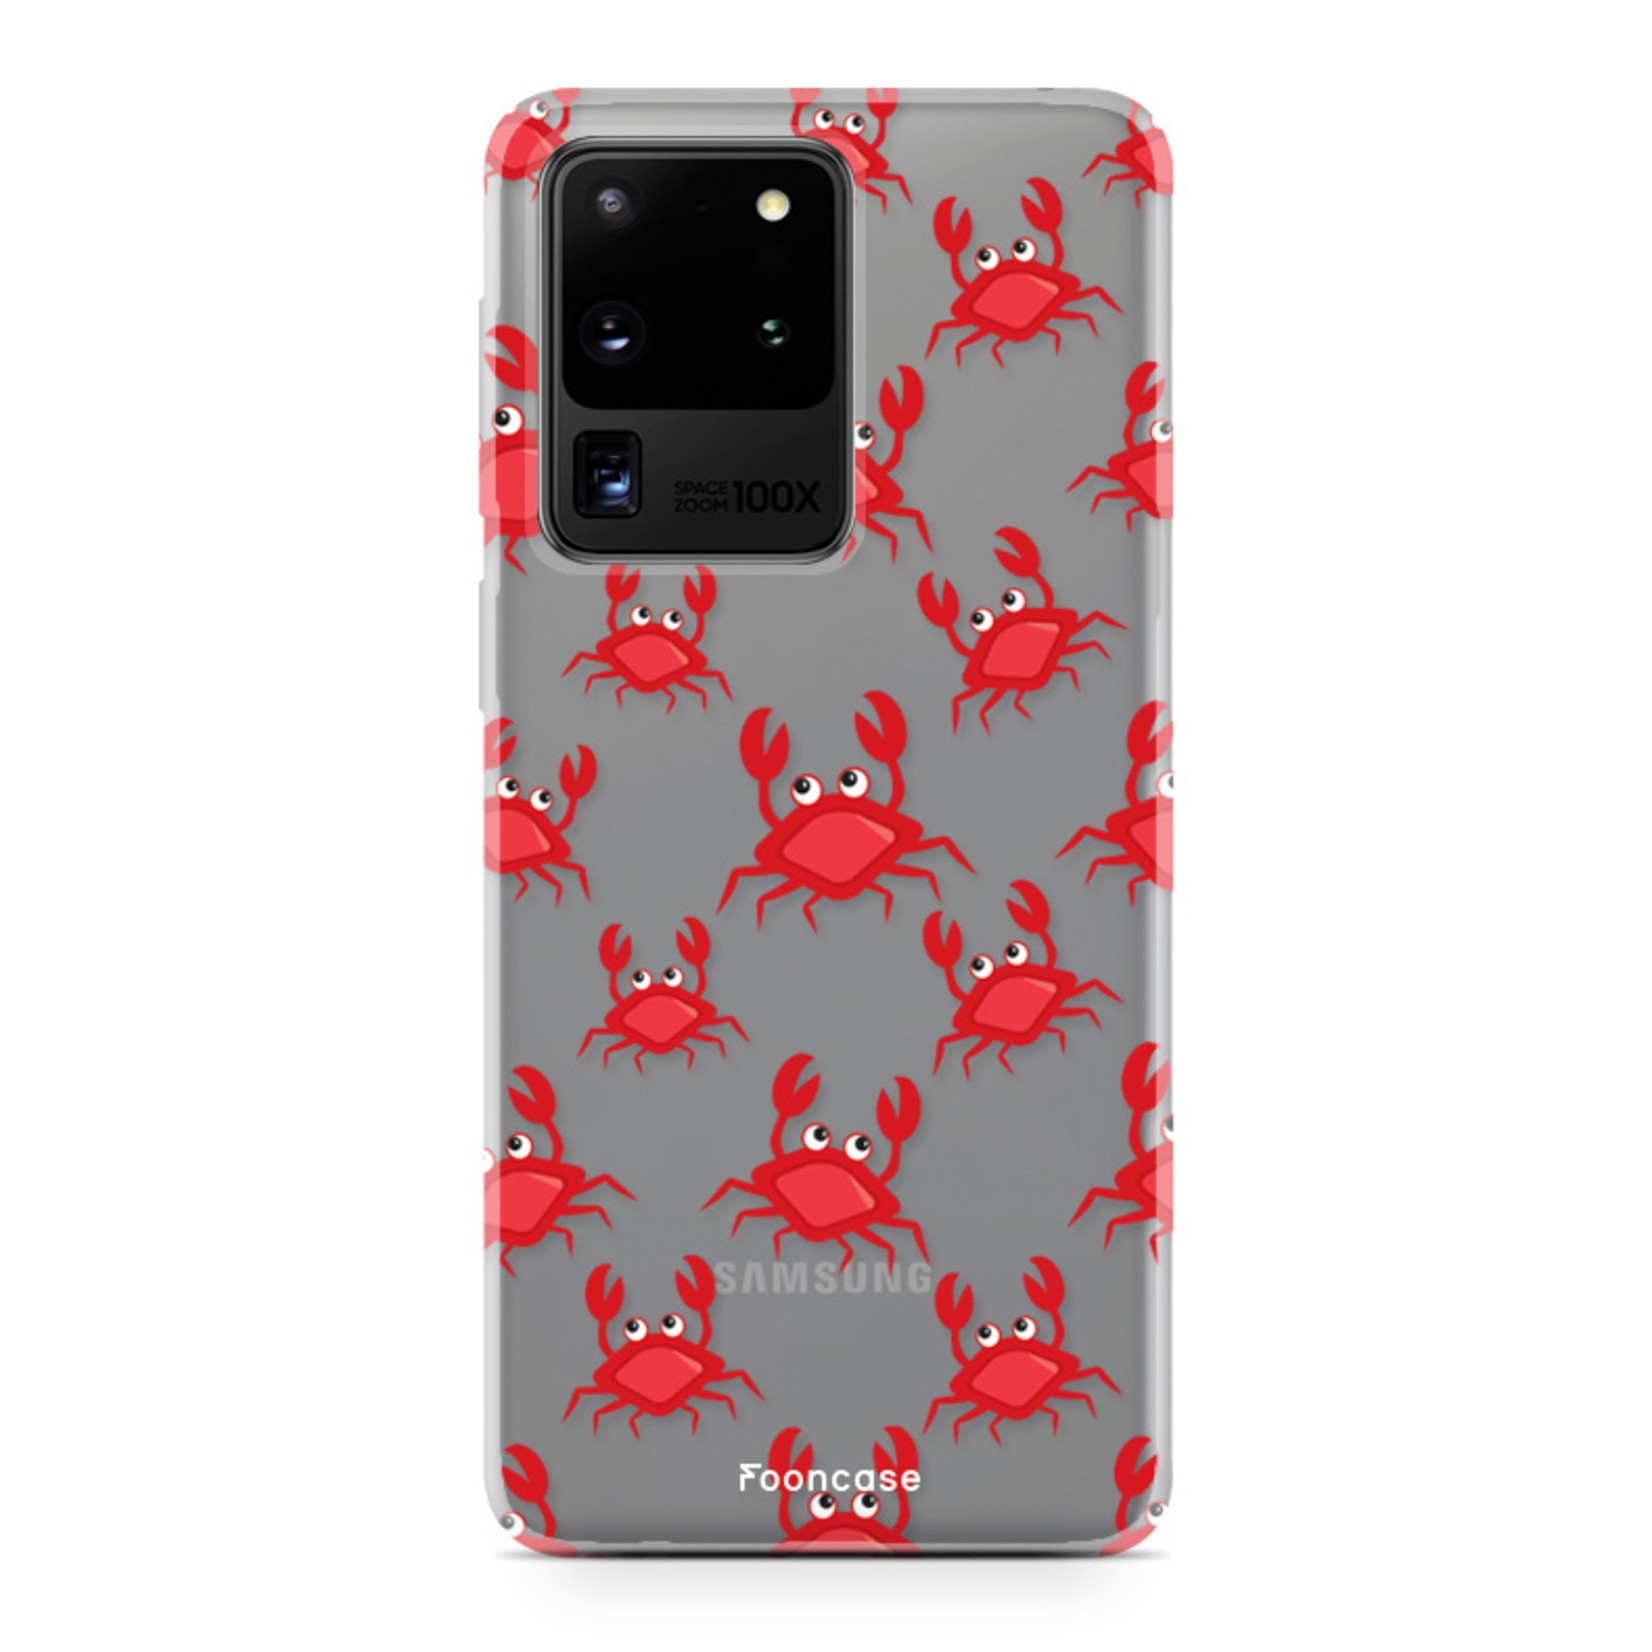 FOONCASE Samsung Galaxy S20 Ultra Case - Crabs